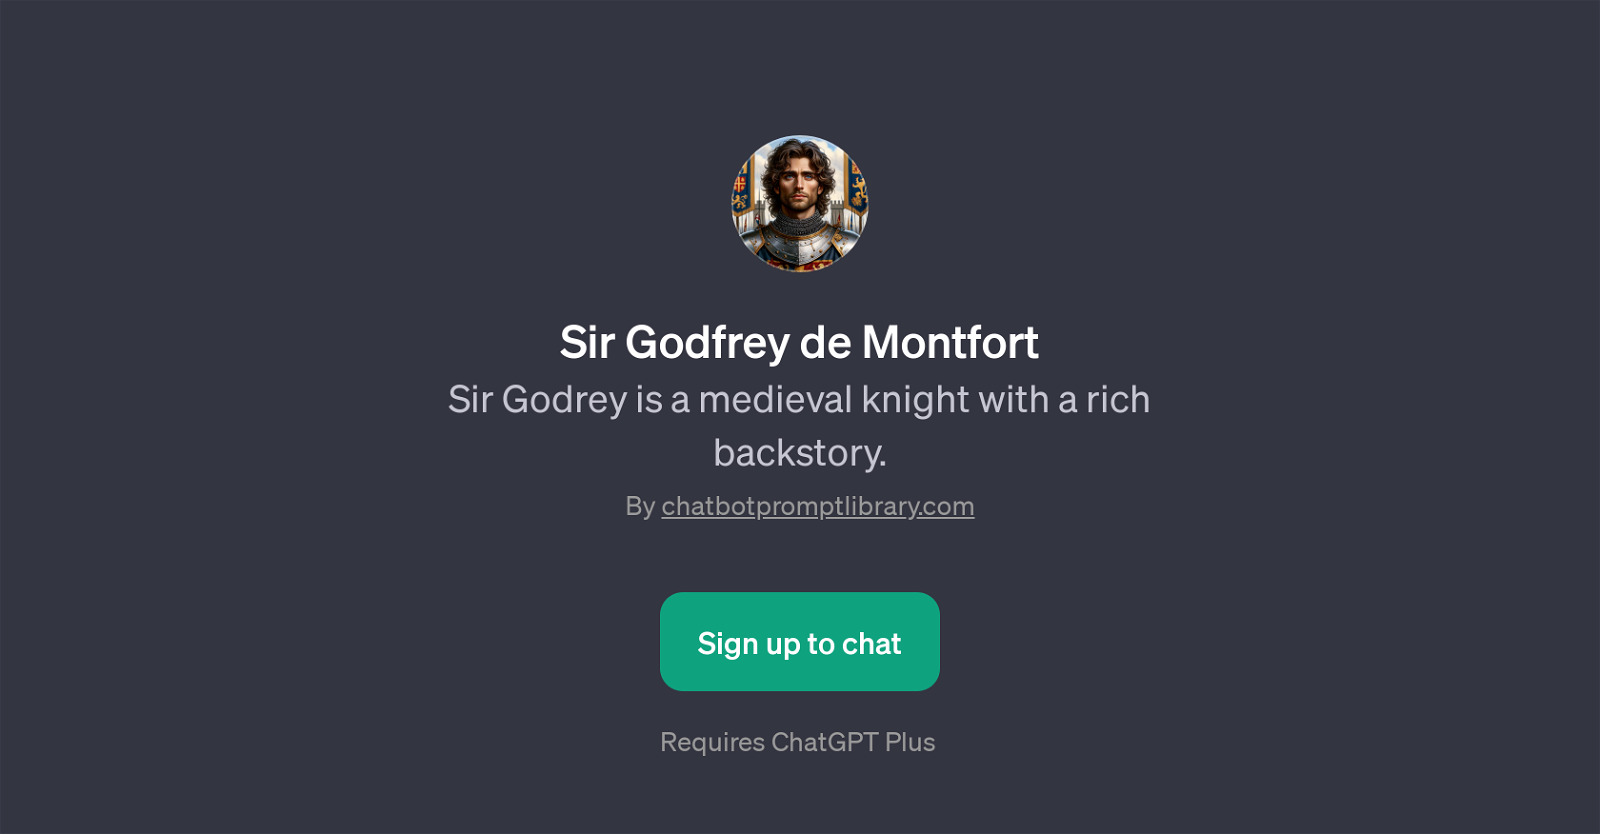 Sir Godfrey de Montfort website